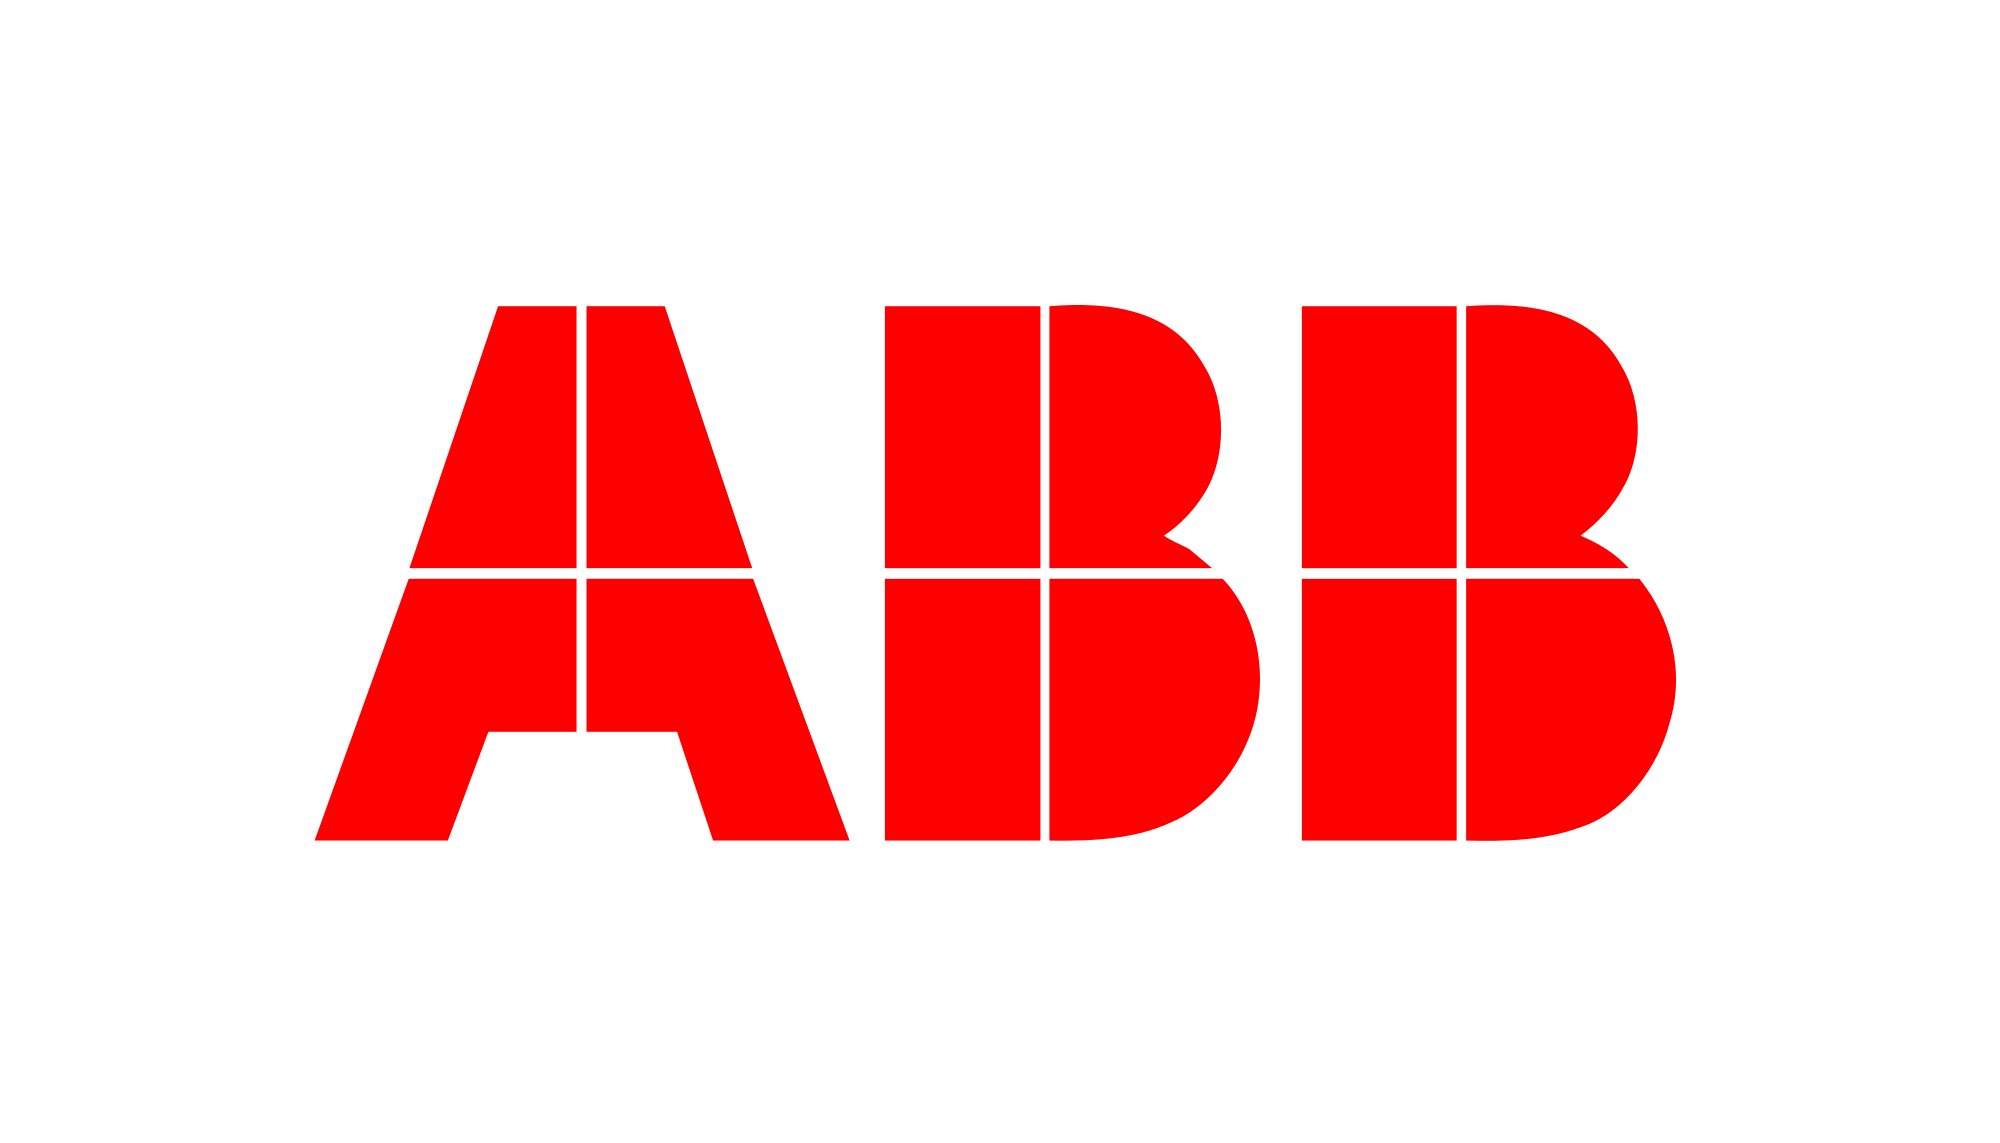 abb-logo